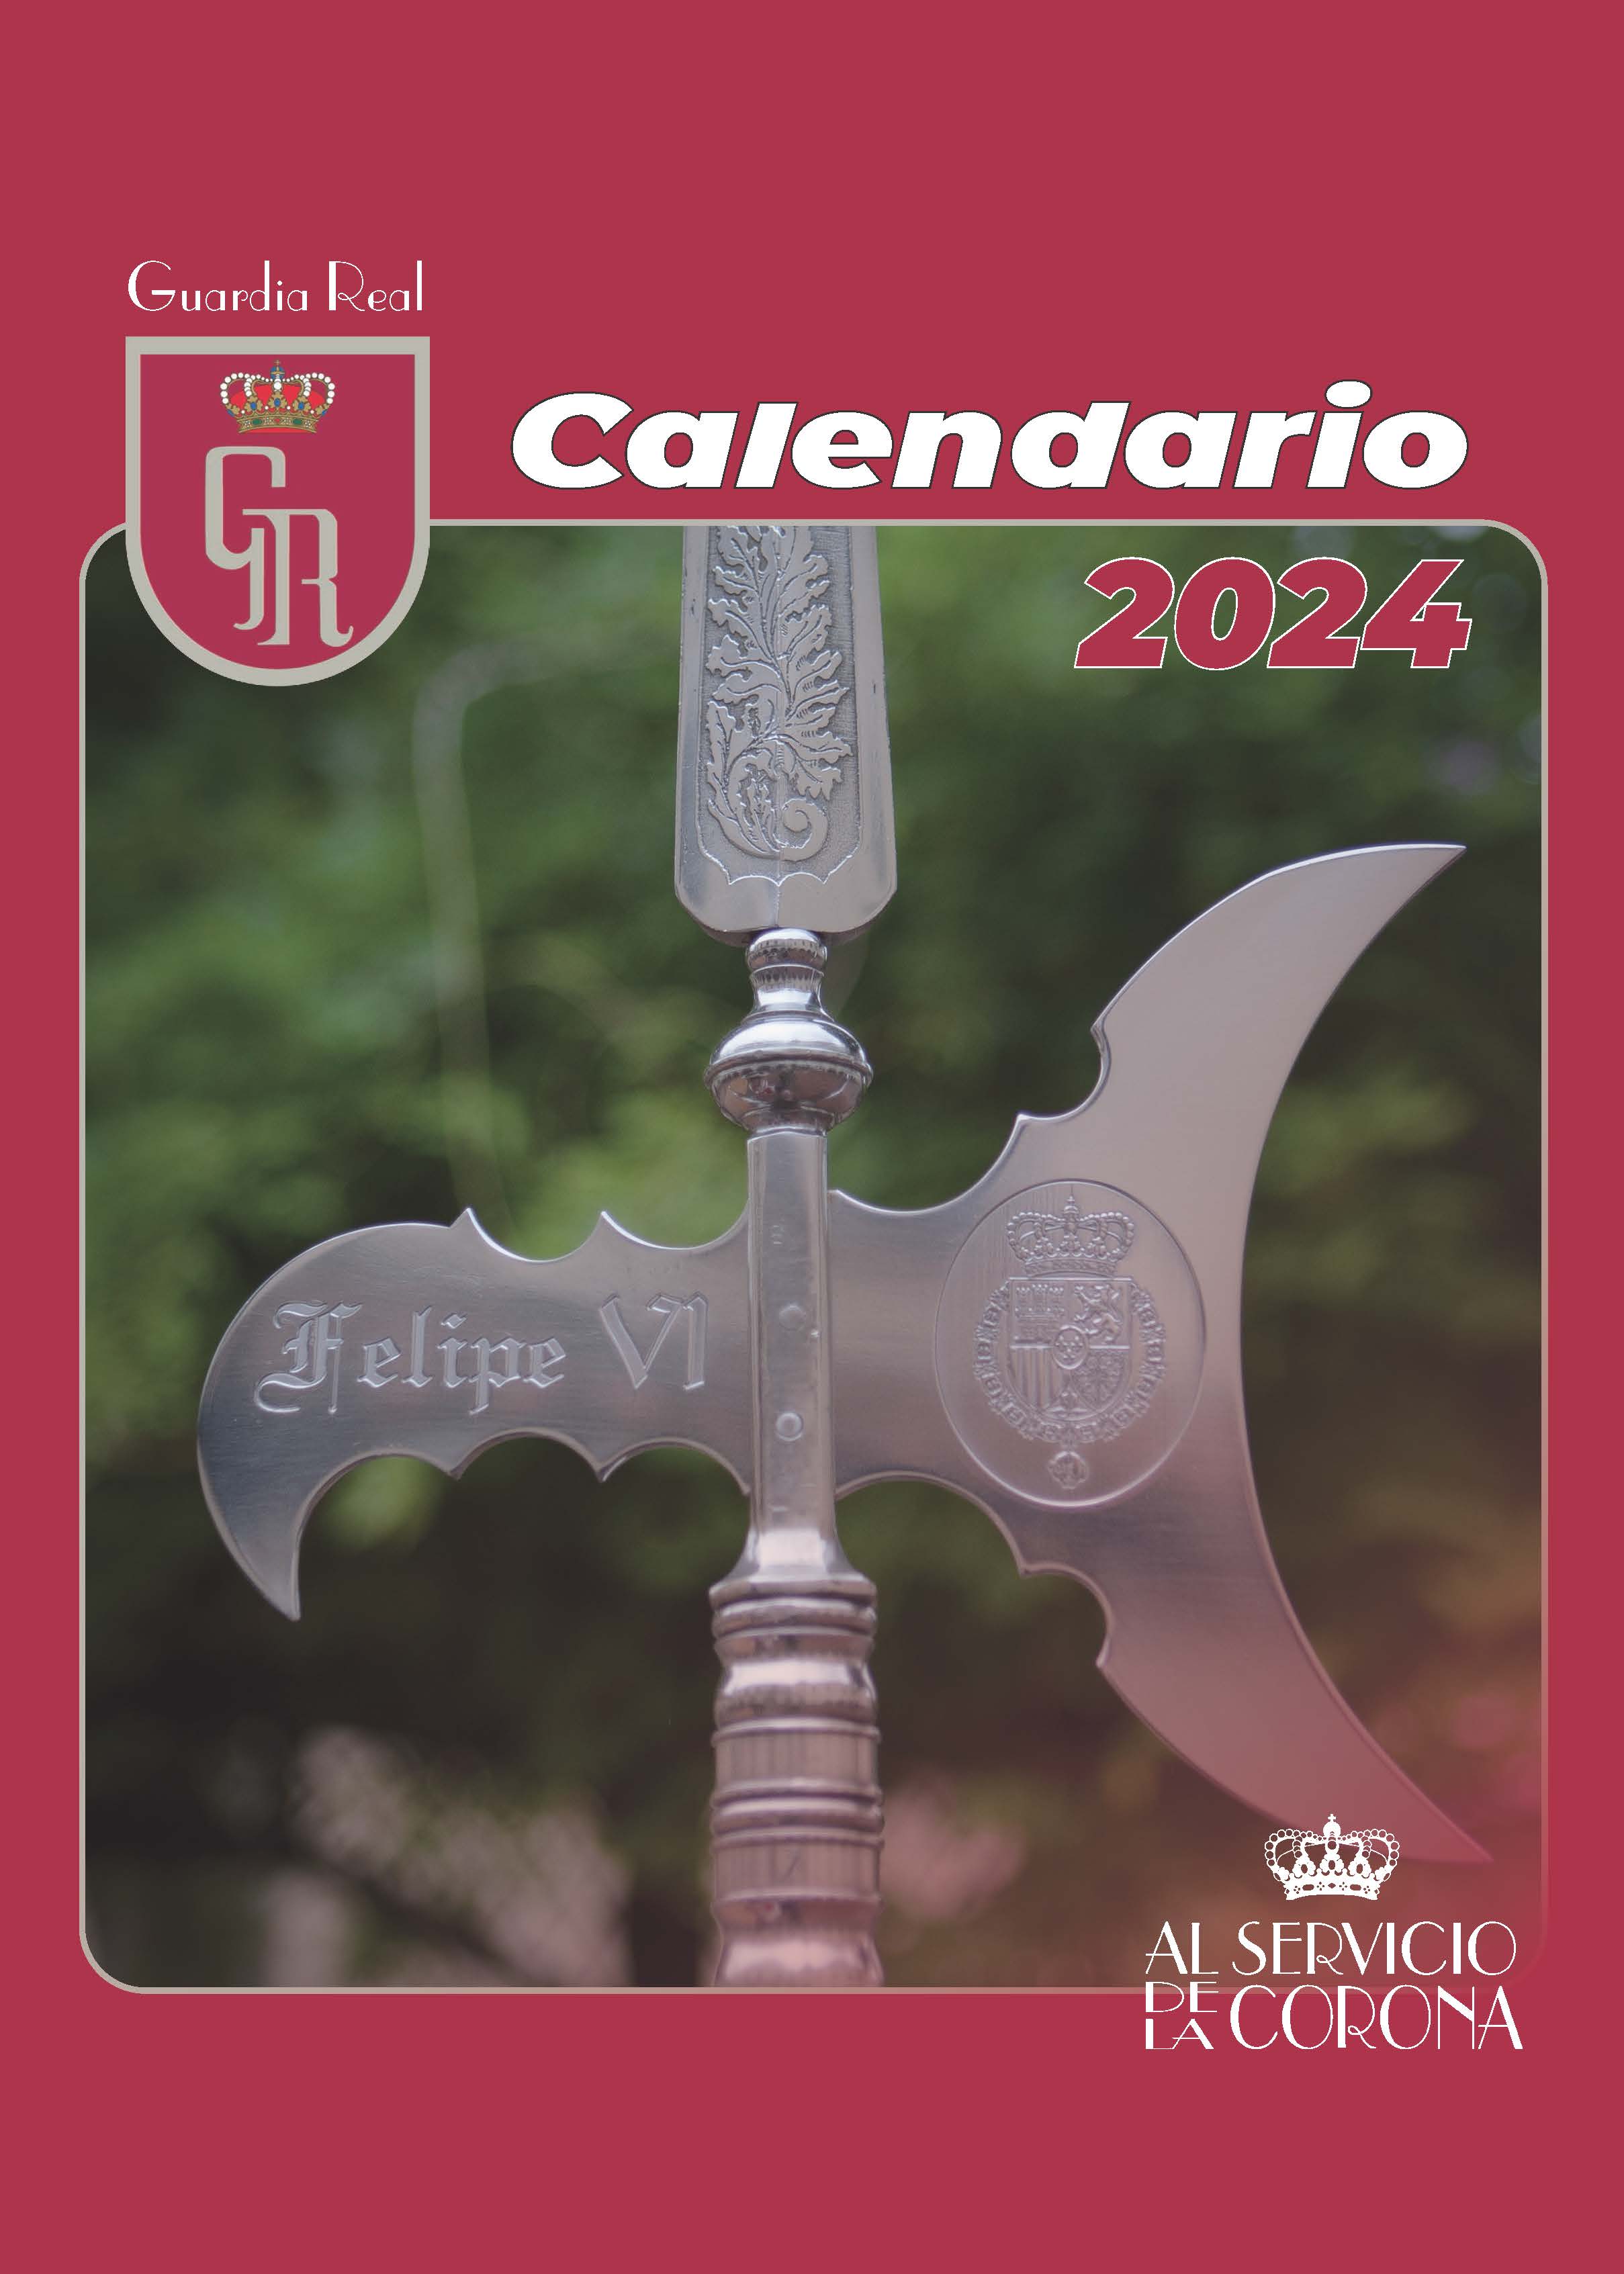 2024 Calendario de la Guardia Real (pared)